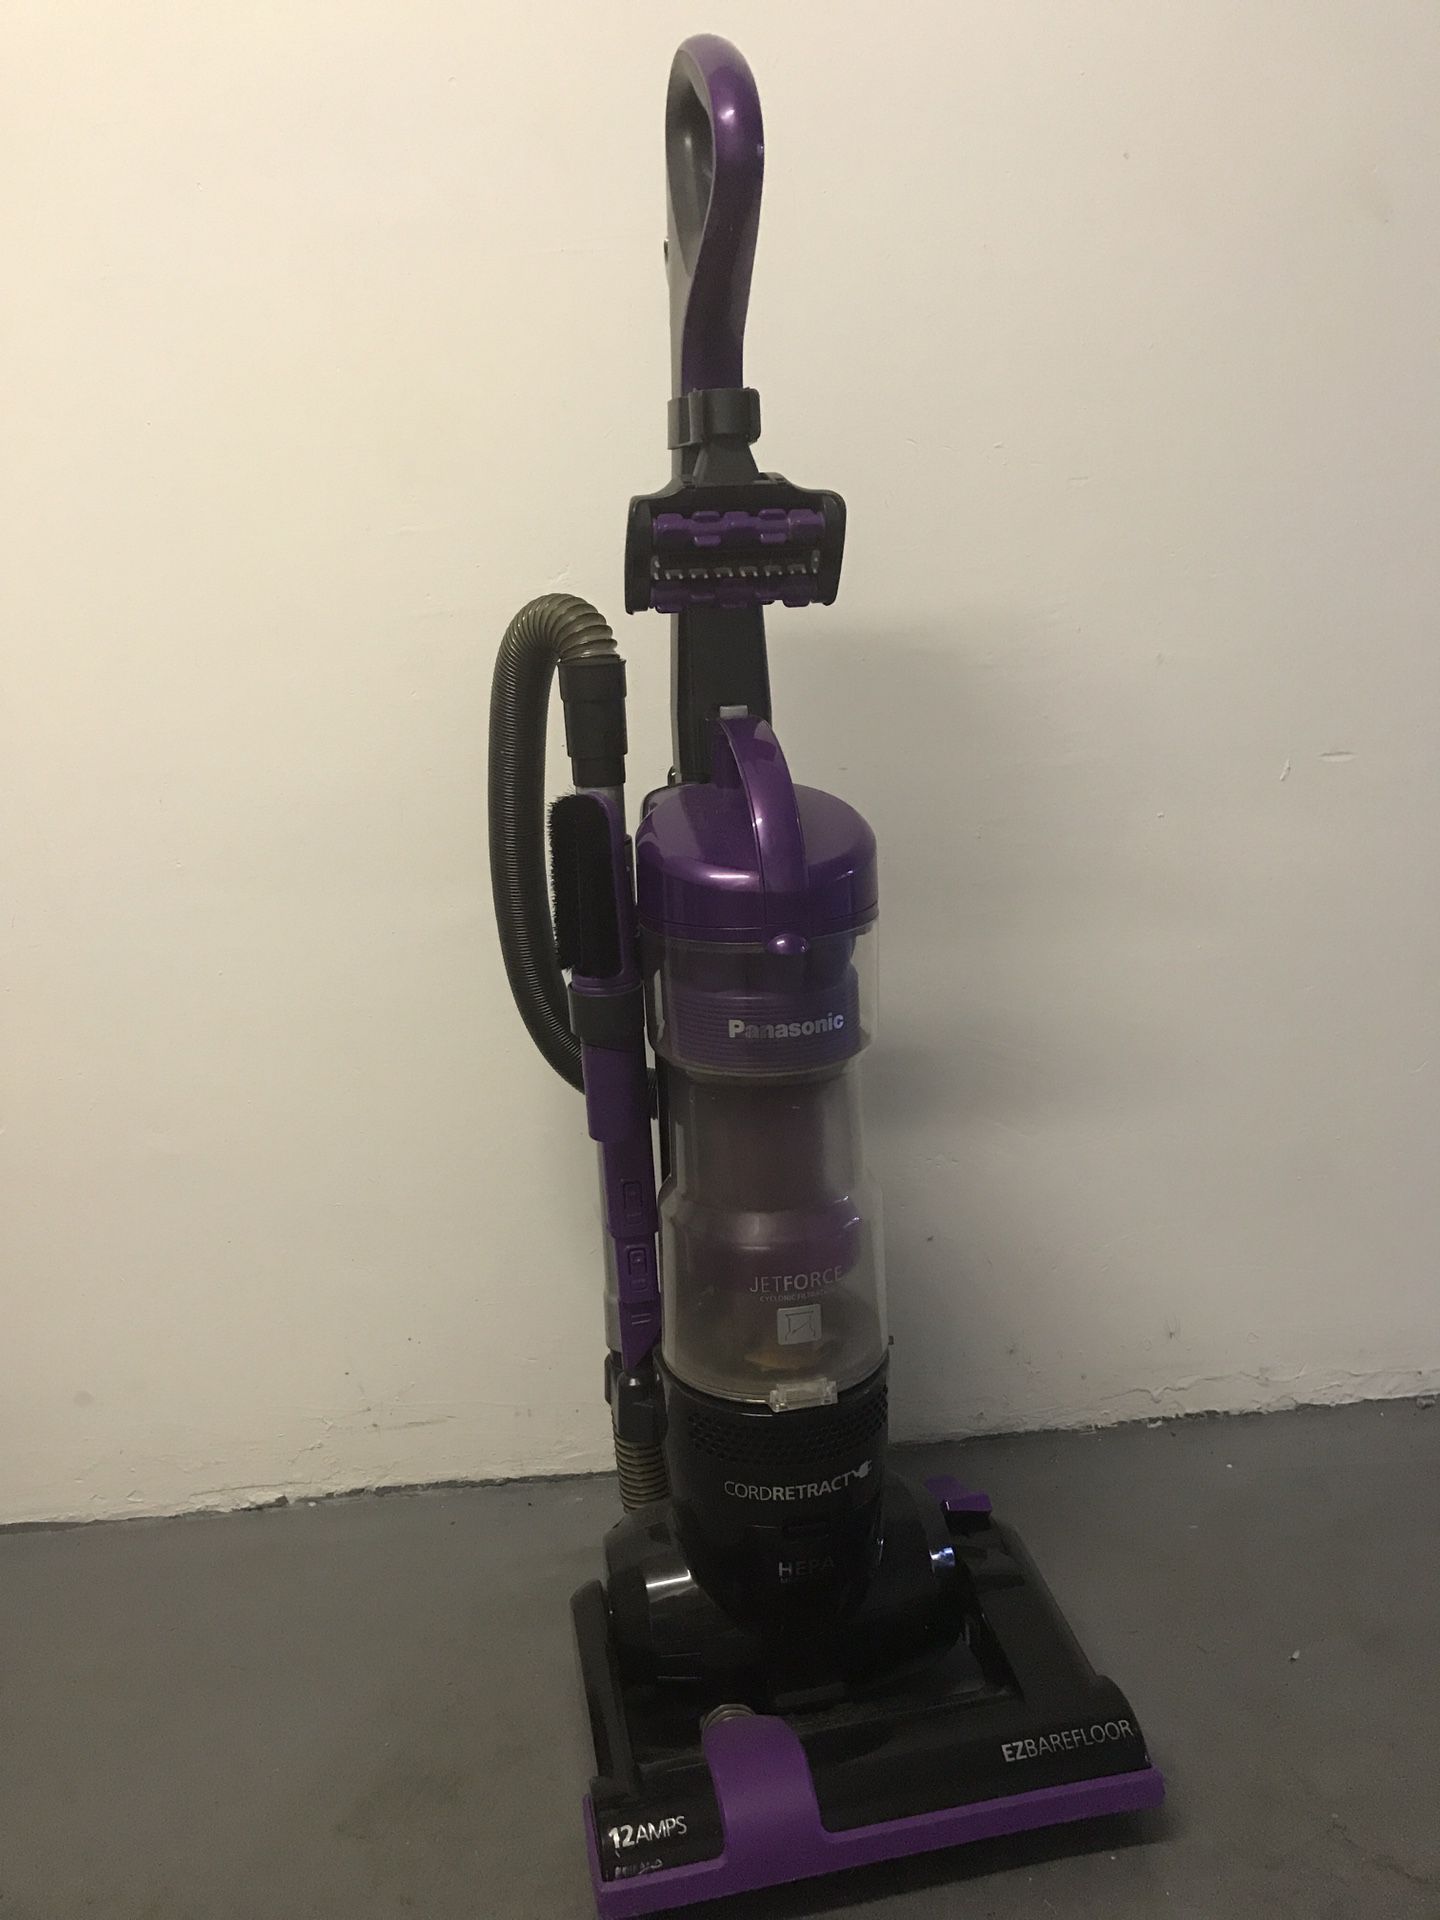 a vacuum cleaner